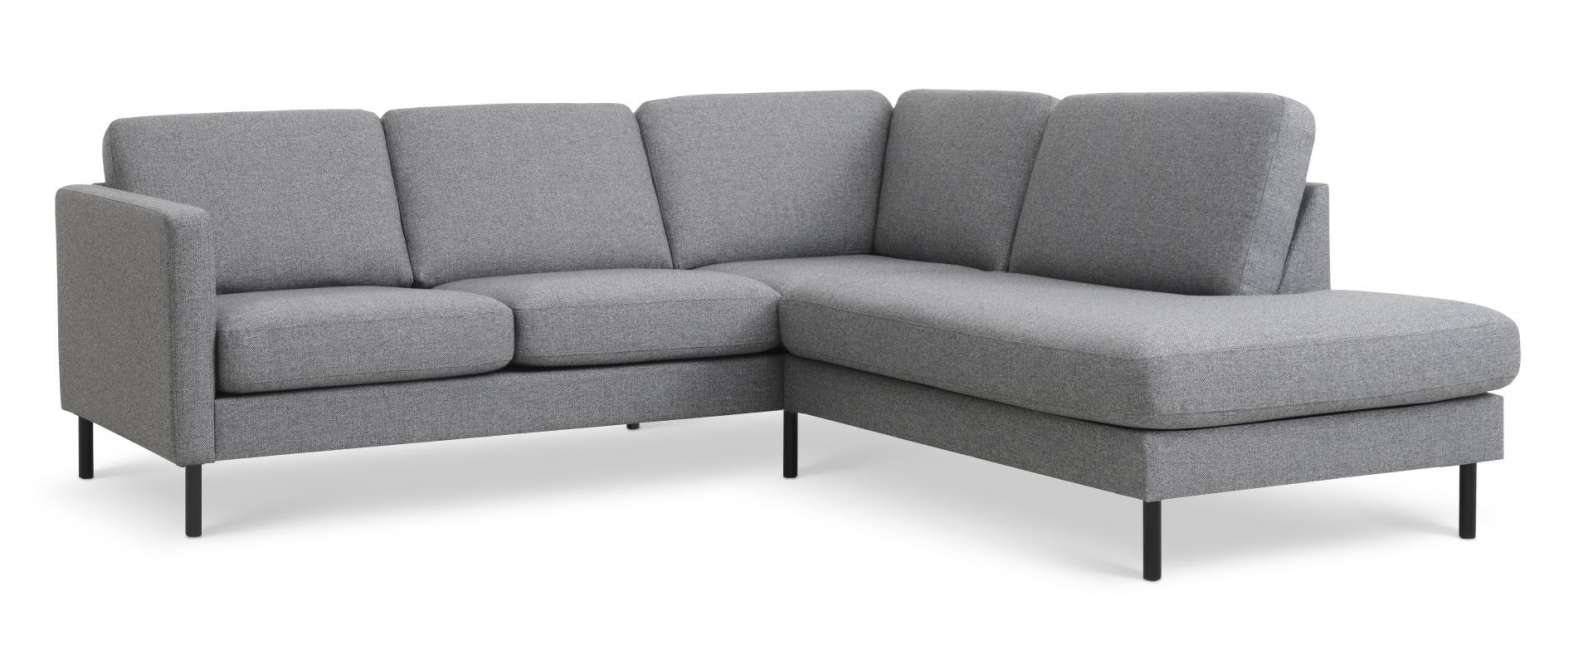 Priser på Ask sæt 53 lille OE sofa, m. højre chaiselong - lys granitgrå polyester stof og sort metal